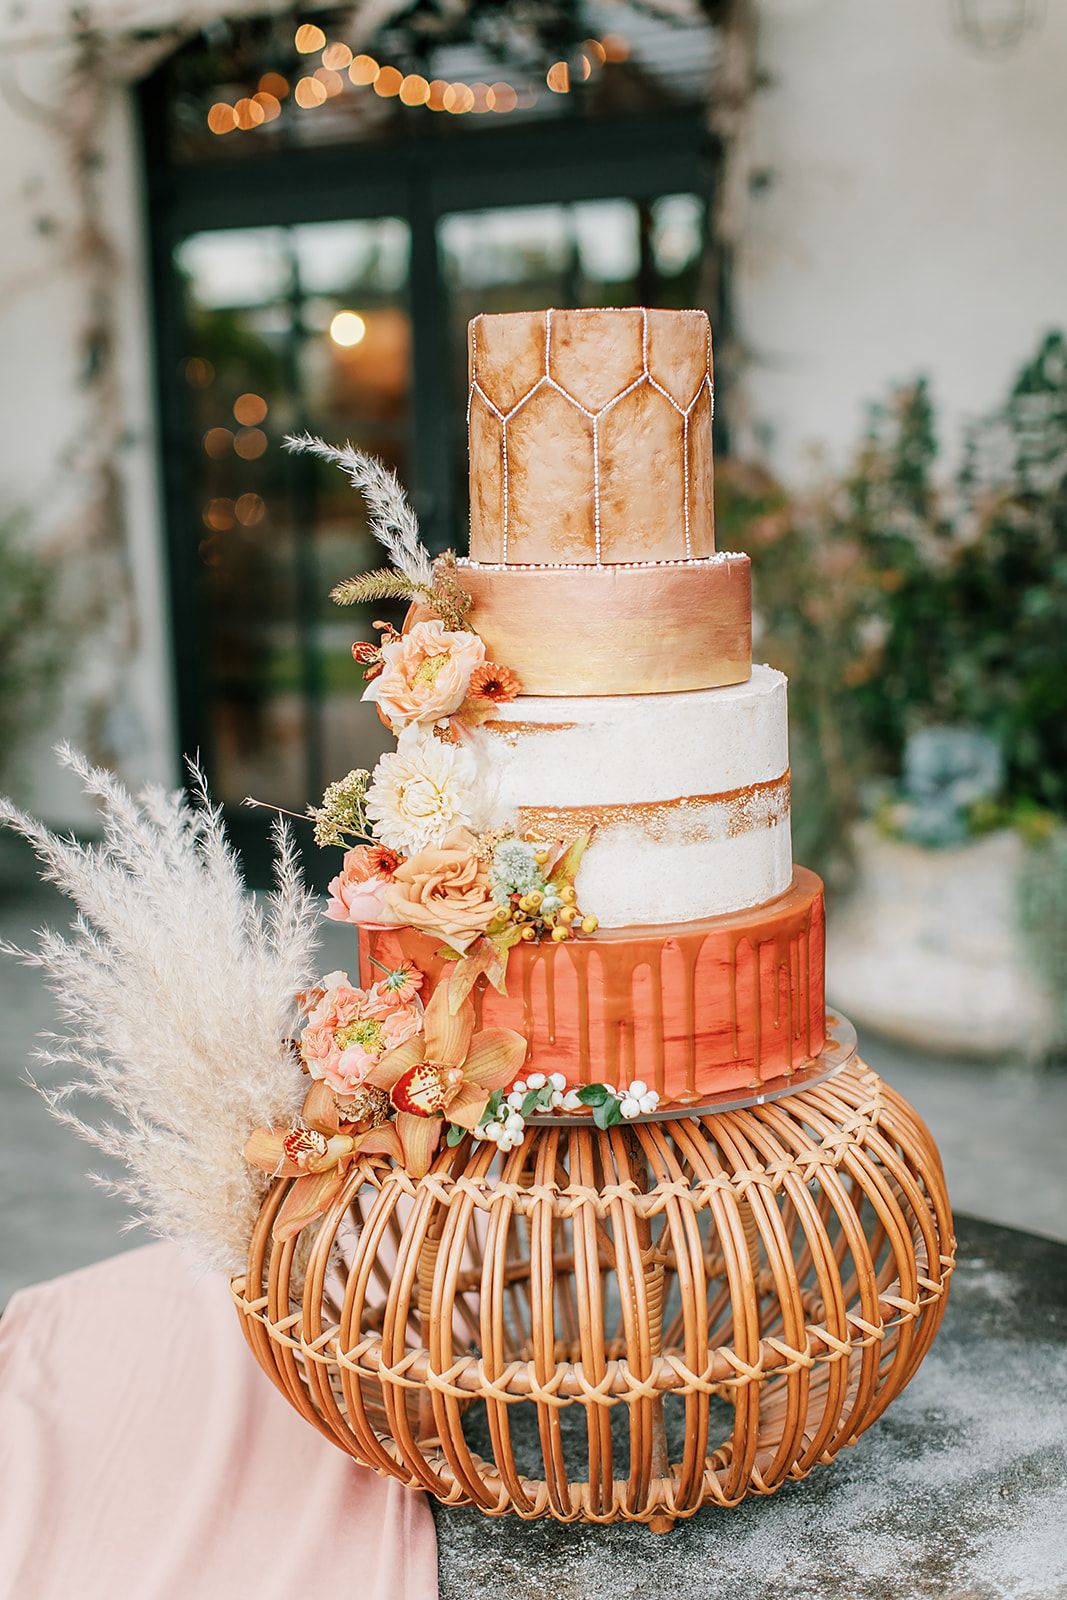 Awesome Fall Wedding Cake - Amazing Cake Ideas